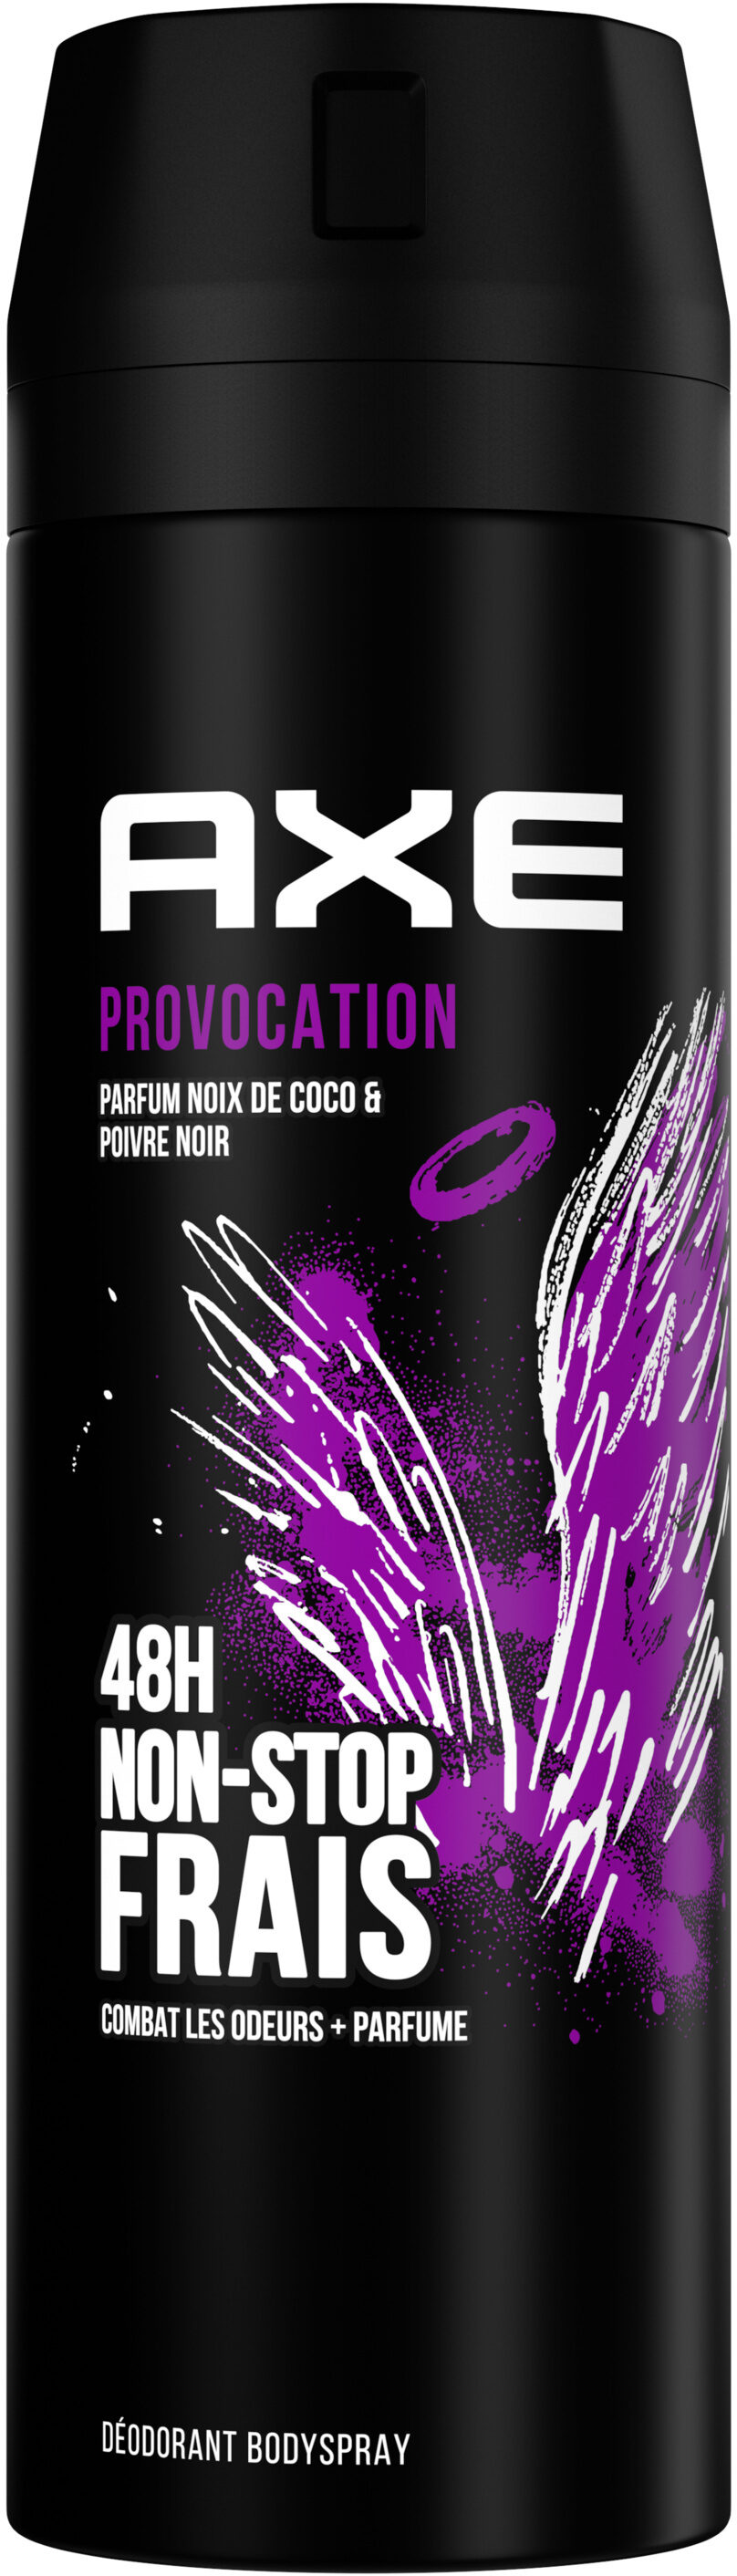 Axe Déodorant Homme Bodyspray Provocation 48h Non-Stop Frais 200ml - Product - fr